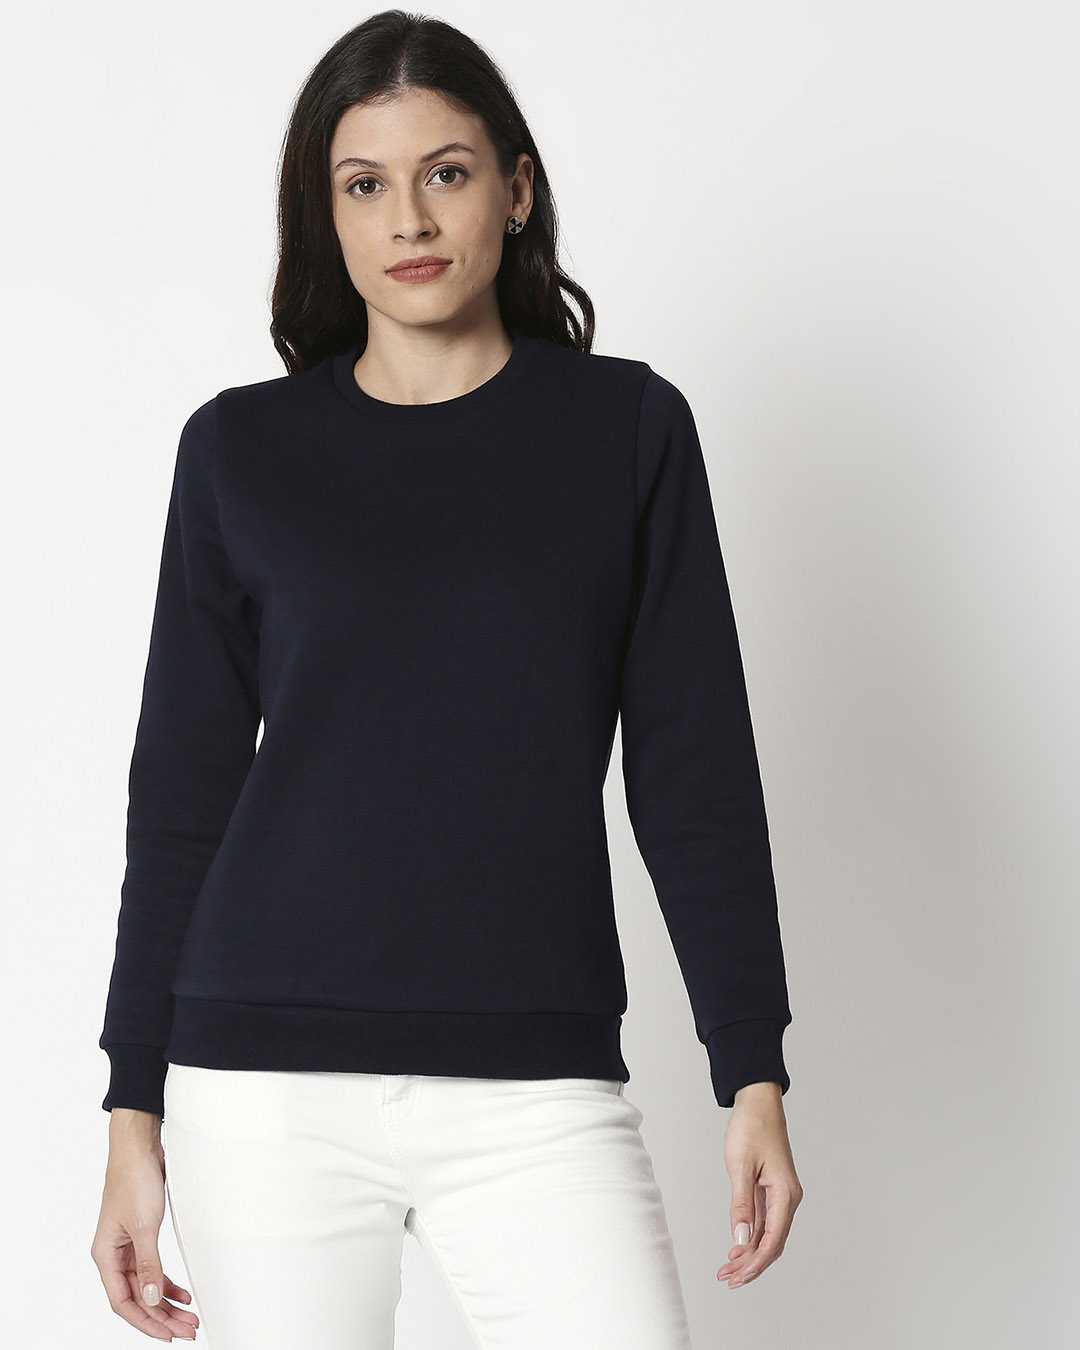 Shop Women's Navy Blue Sweater-Back